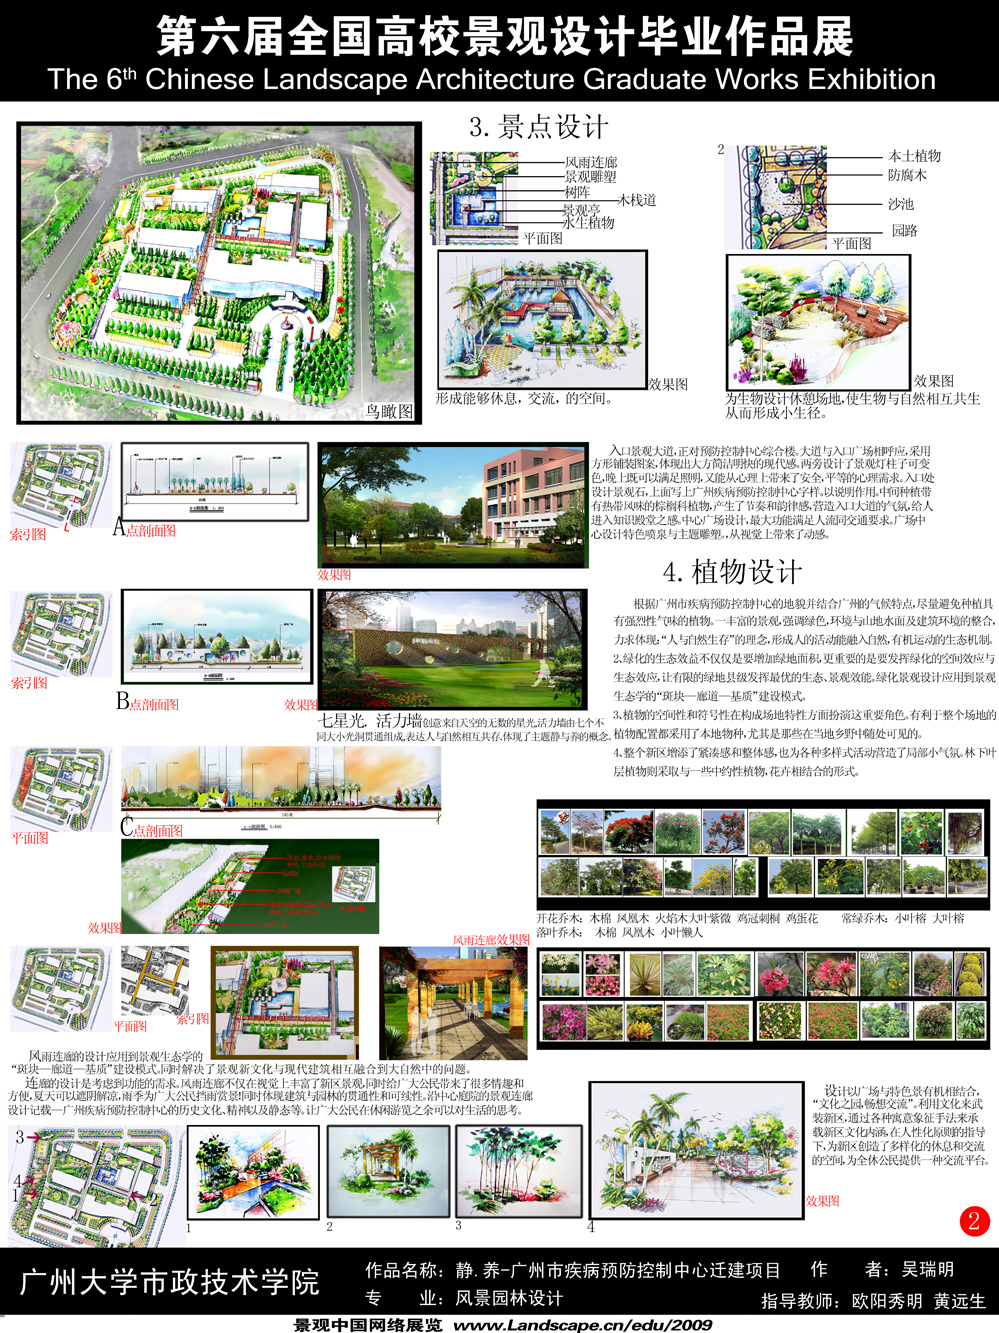 静.养 - 广州市疾病预防控制中心迁建项目-2